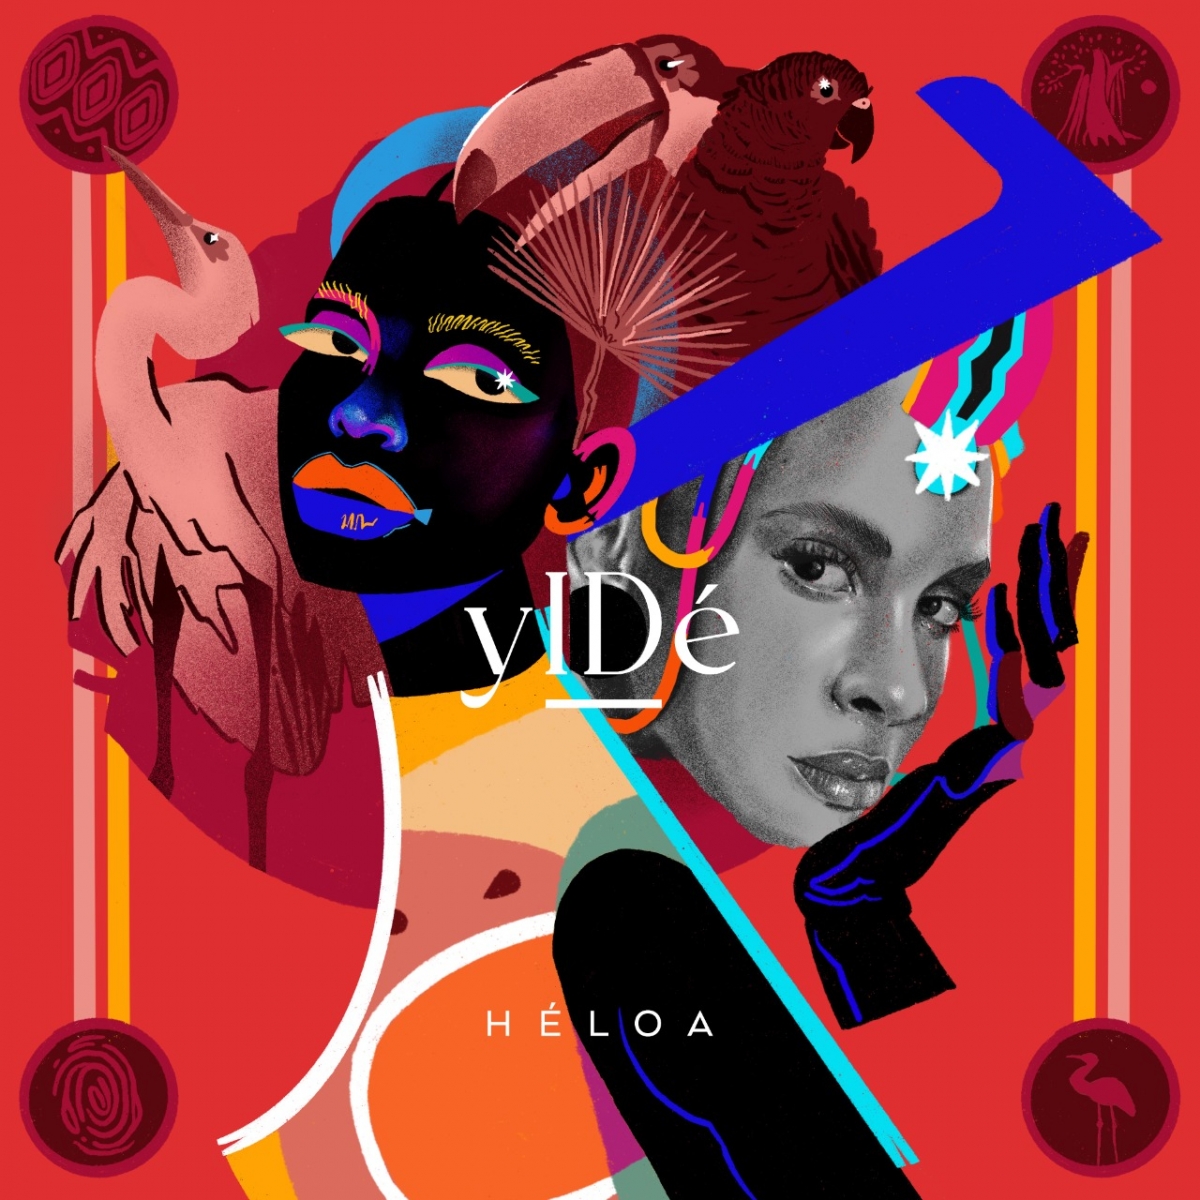 Héloa estreia álbum yIDé com participações de importantes nomes da música brasileira (Imagem: Divulgação)